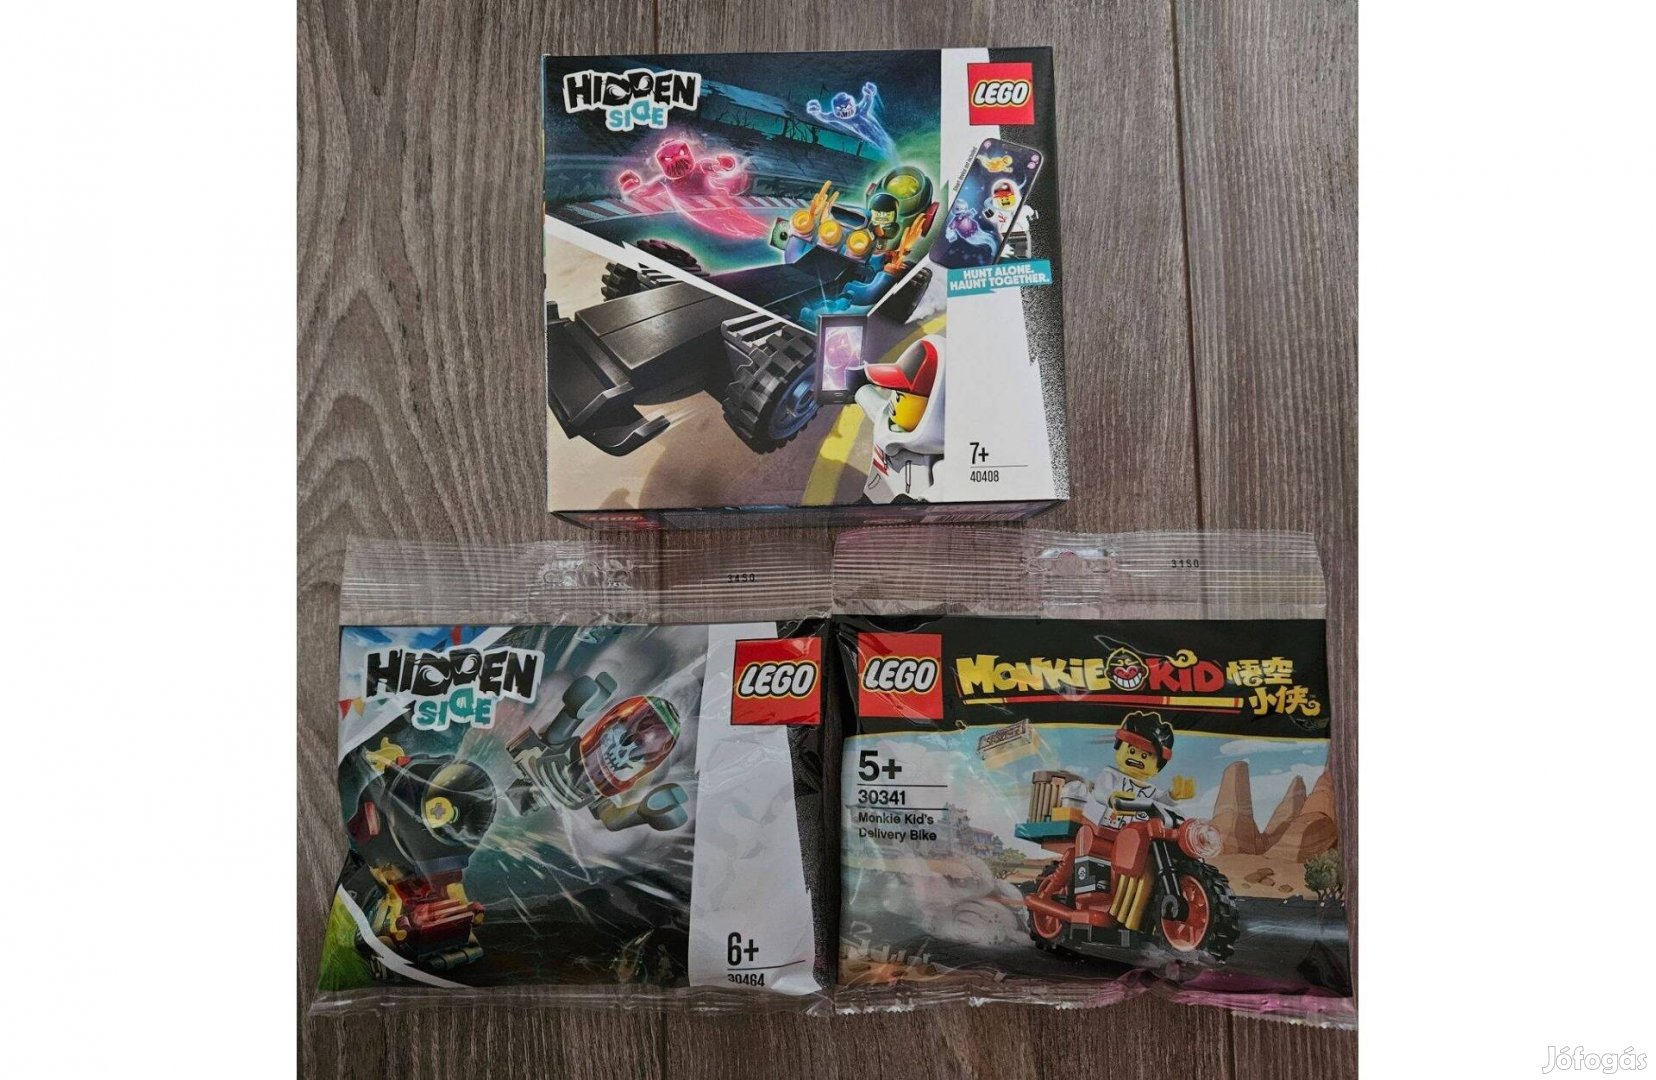 Új lego csomag: Hidden Side 40408, 30464 és Monkie Kid 30341 eladó!